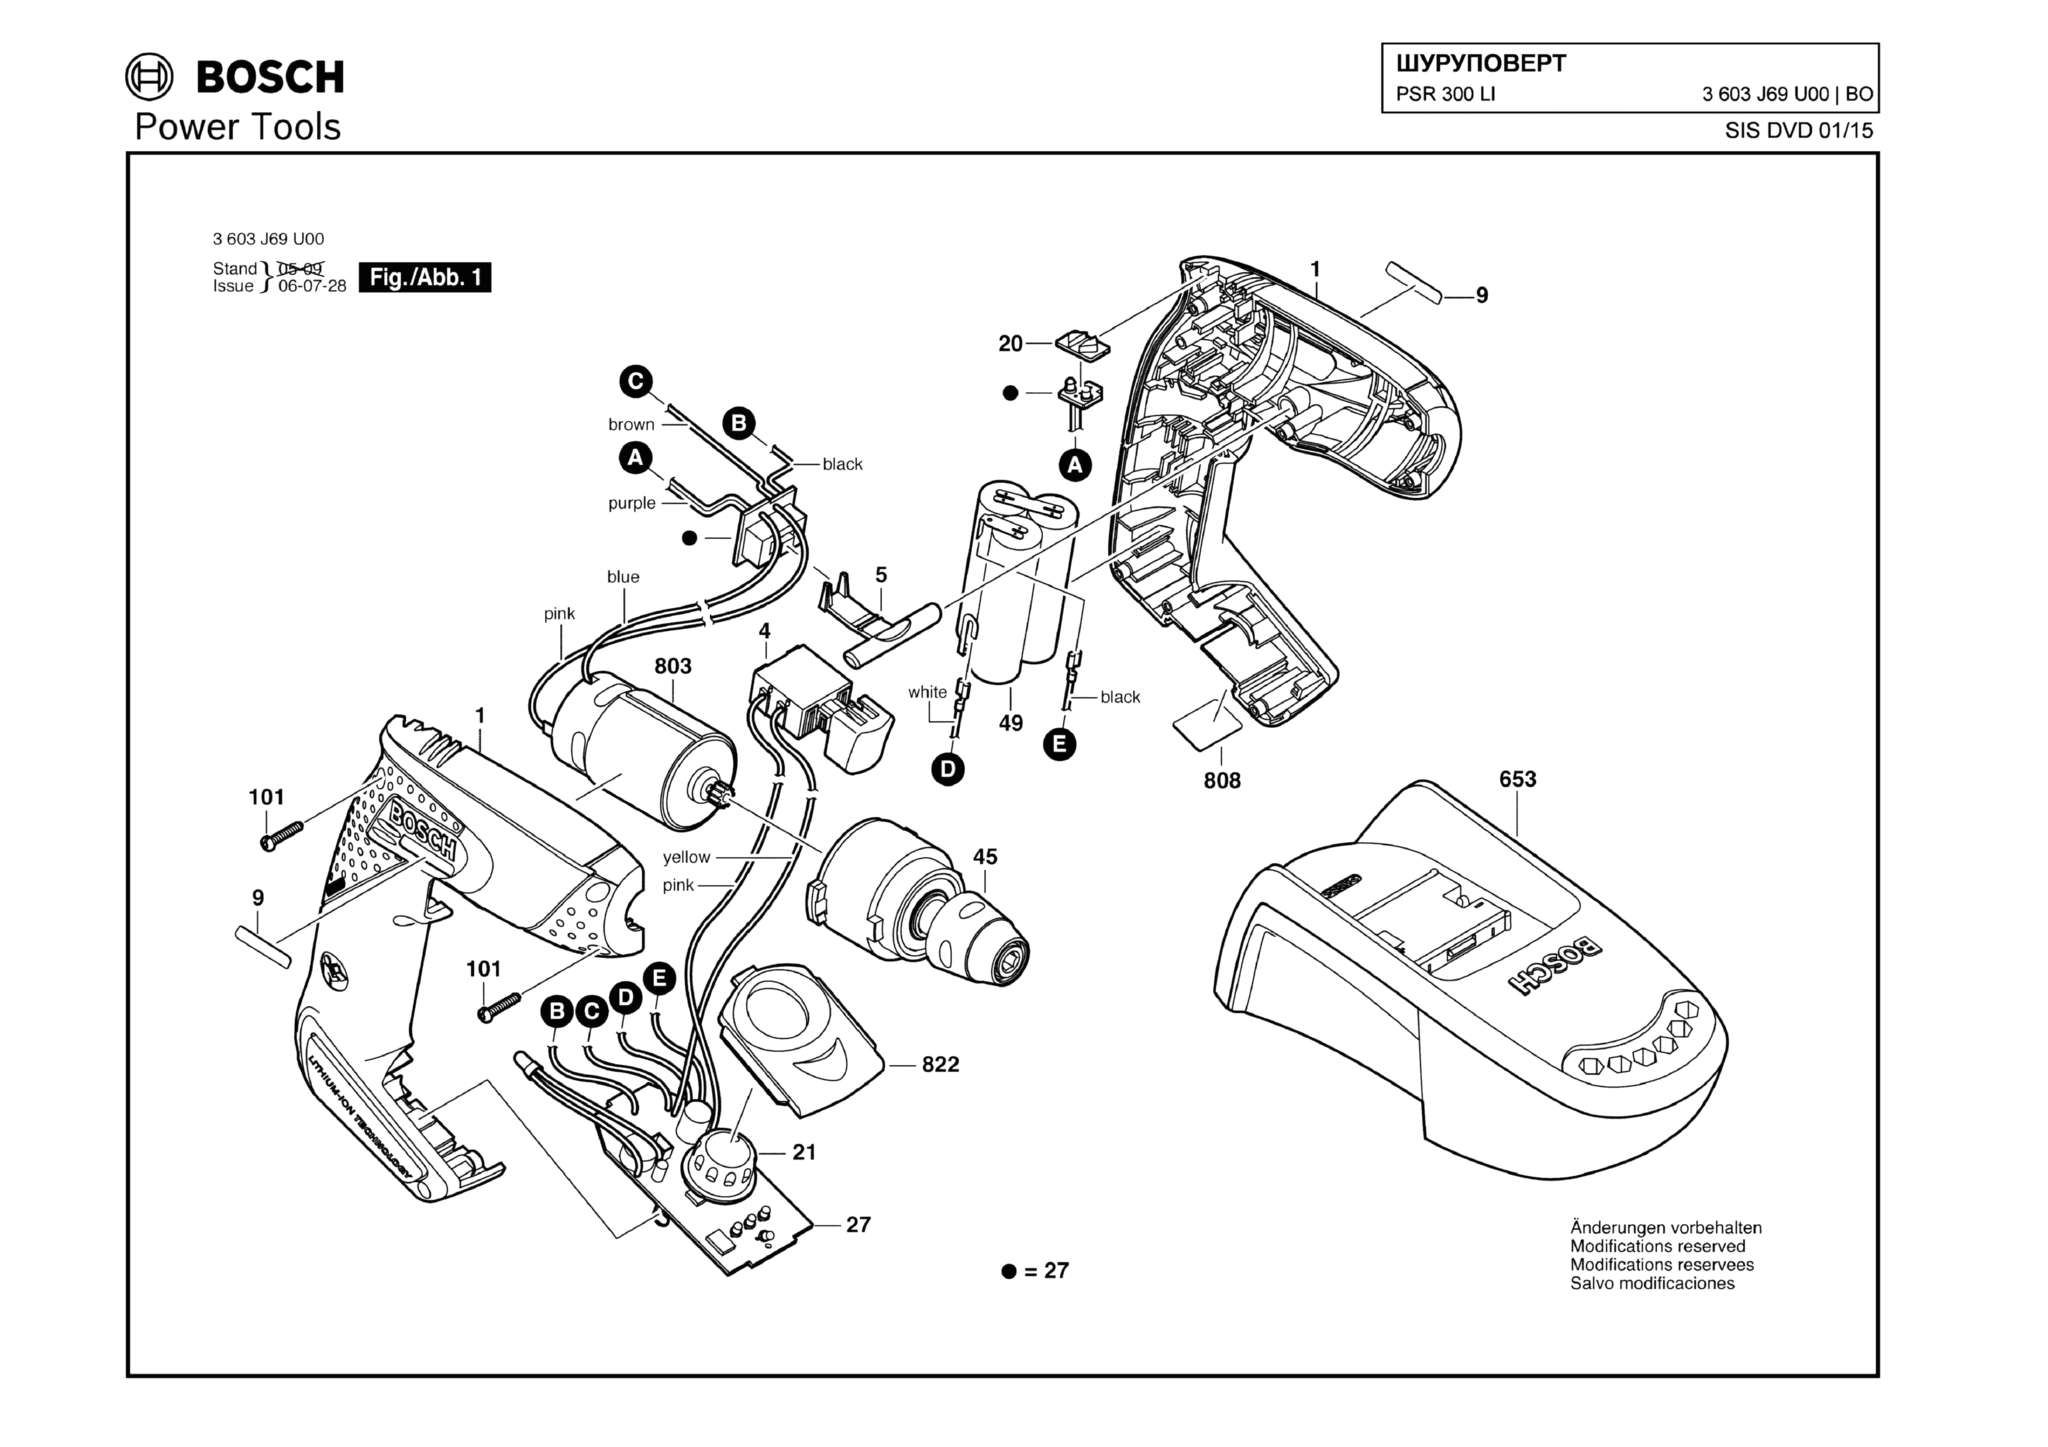 Запчасти, схема и деталировка Bosch PSR 300 LI (ТИП 3603J69U00)